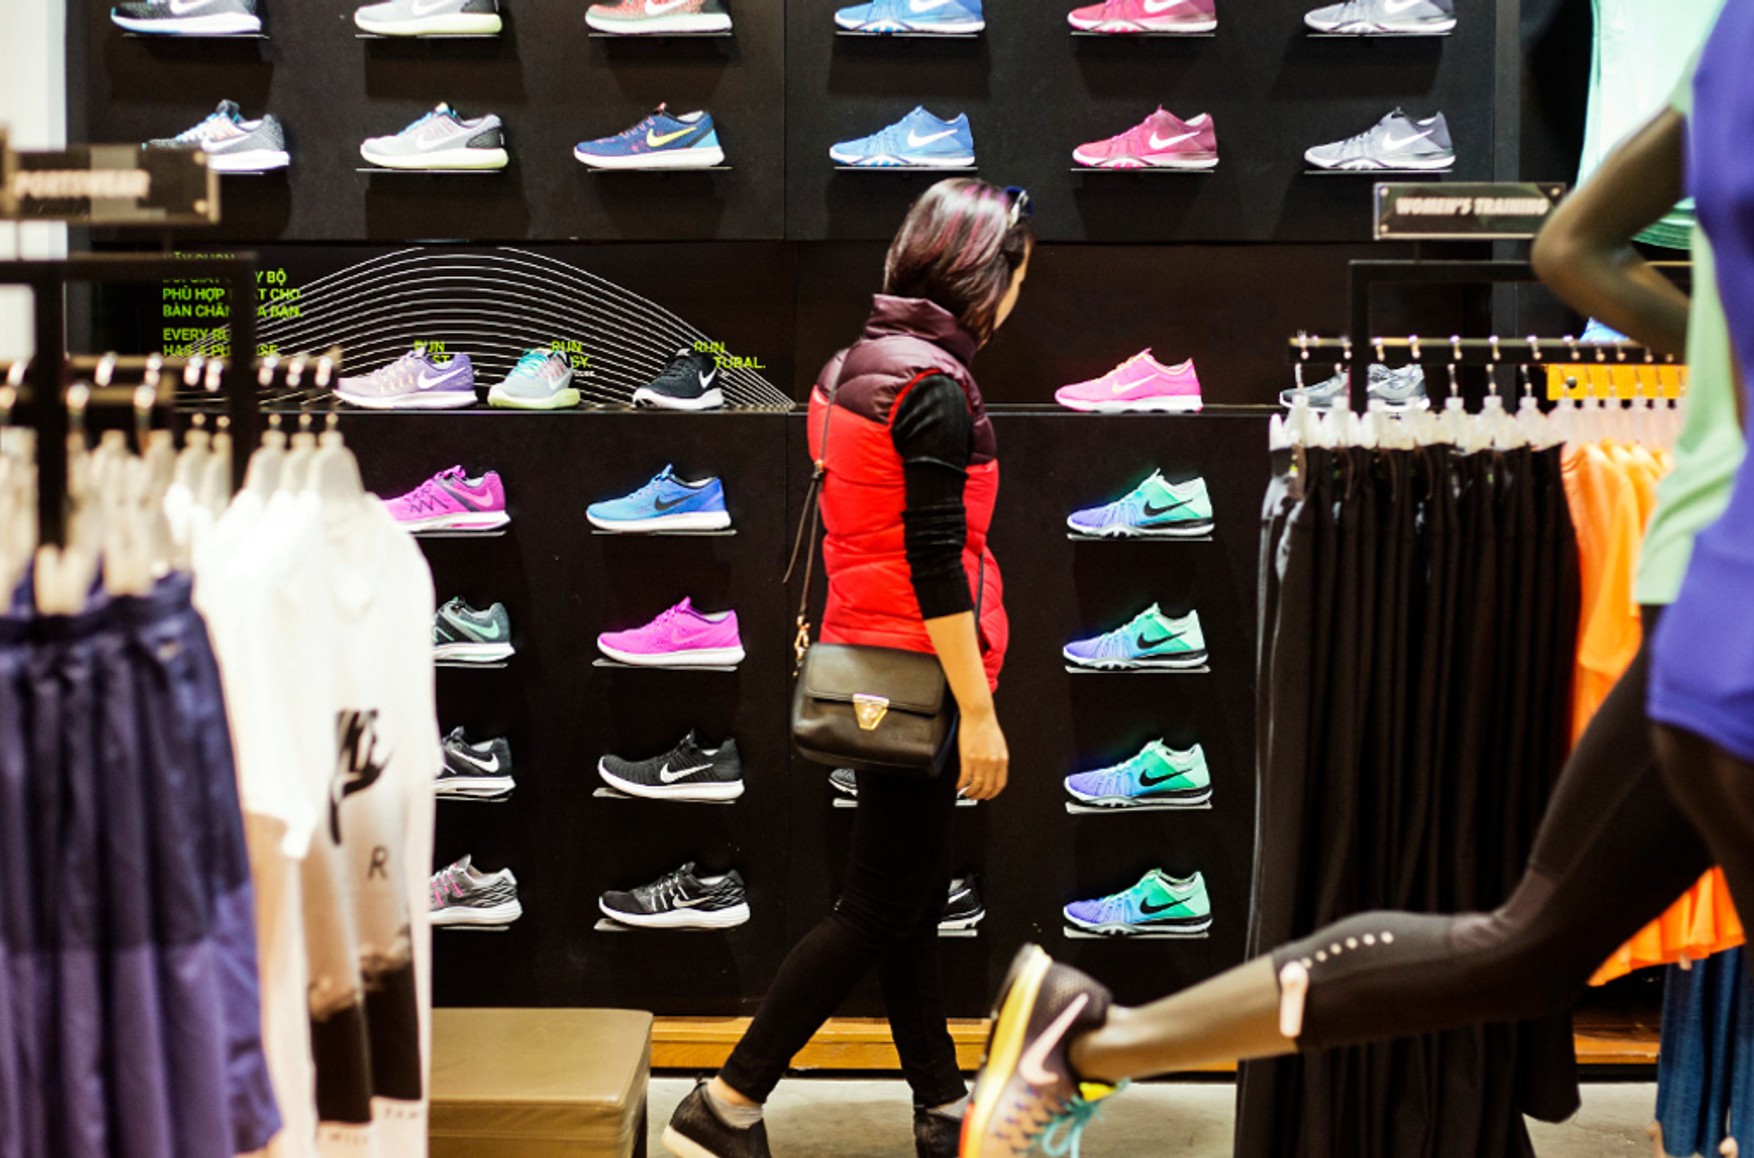 Nike закроет все магазины в России, когда закончатся товарные запасы. Сейчас поставки приостановлены, а товар уже в дефиците — «Ведомости»